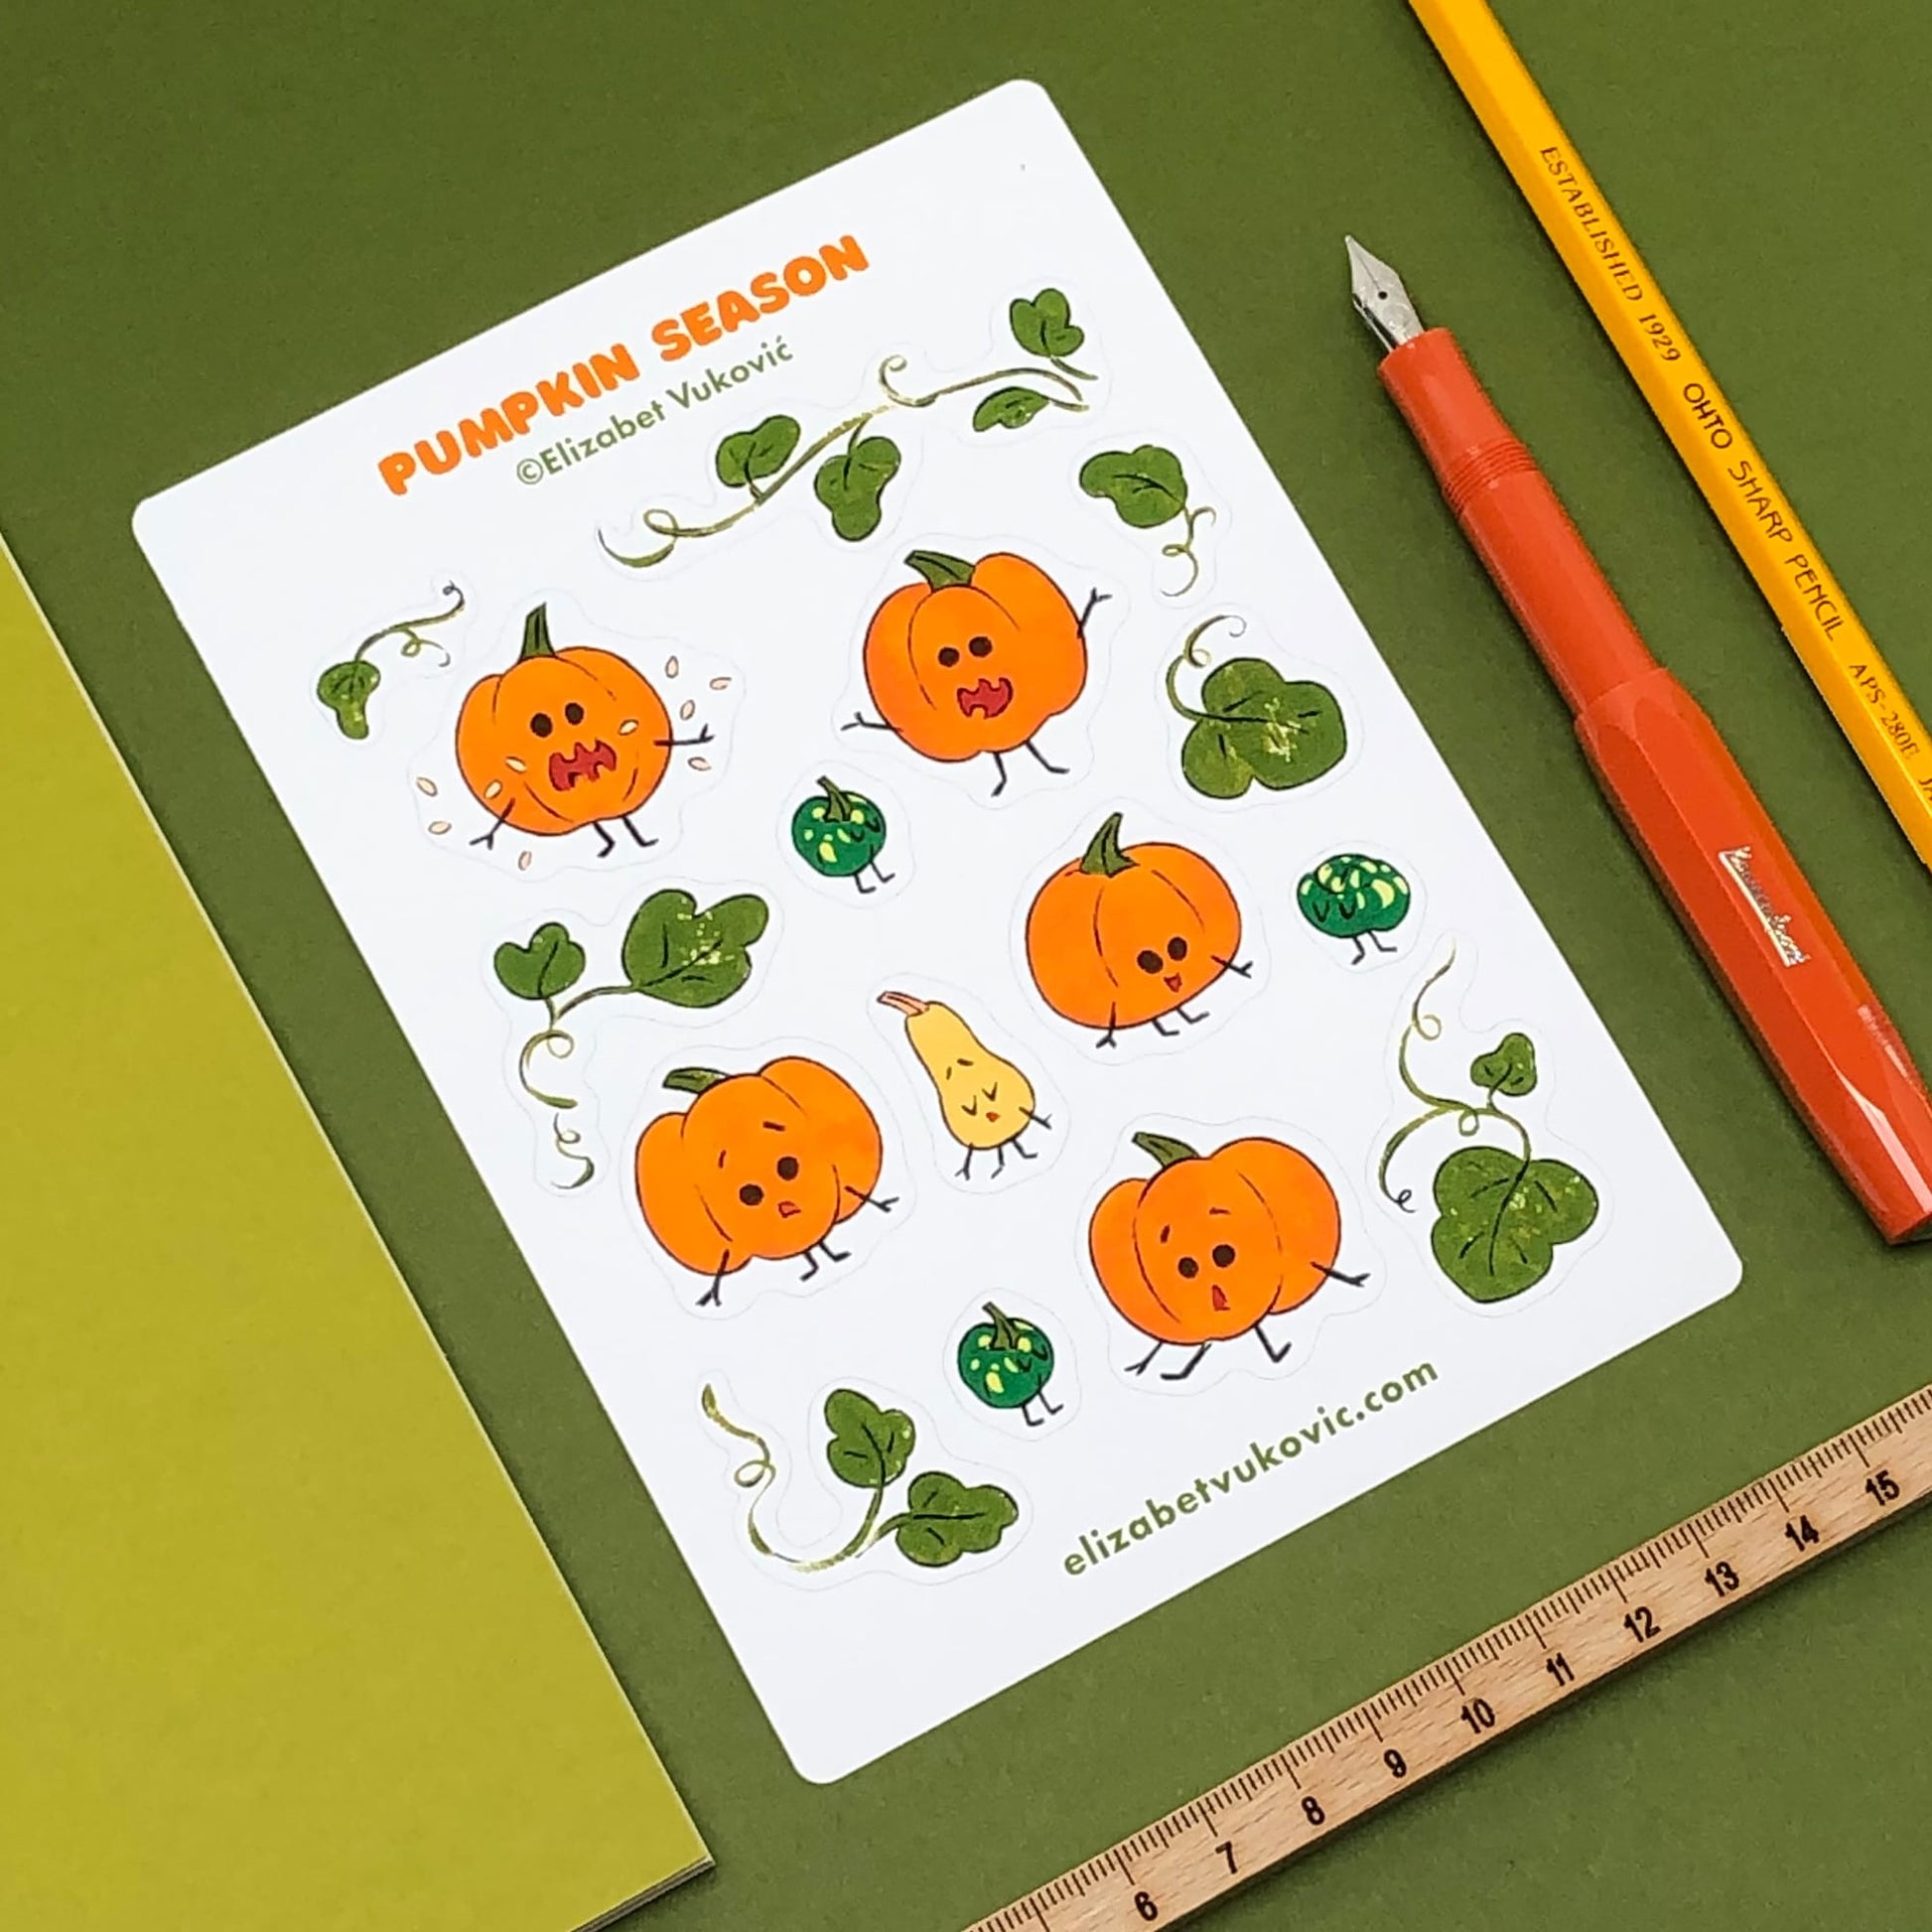 Pumpkins Season sticker sheet featuring illustrations of cartoon pumpkins placed next to a notebook, pencil, fountain pen and ruler.